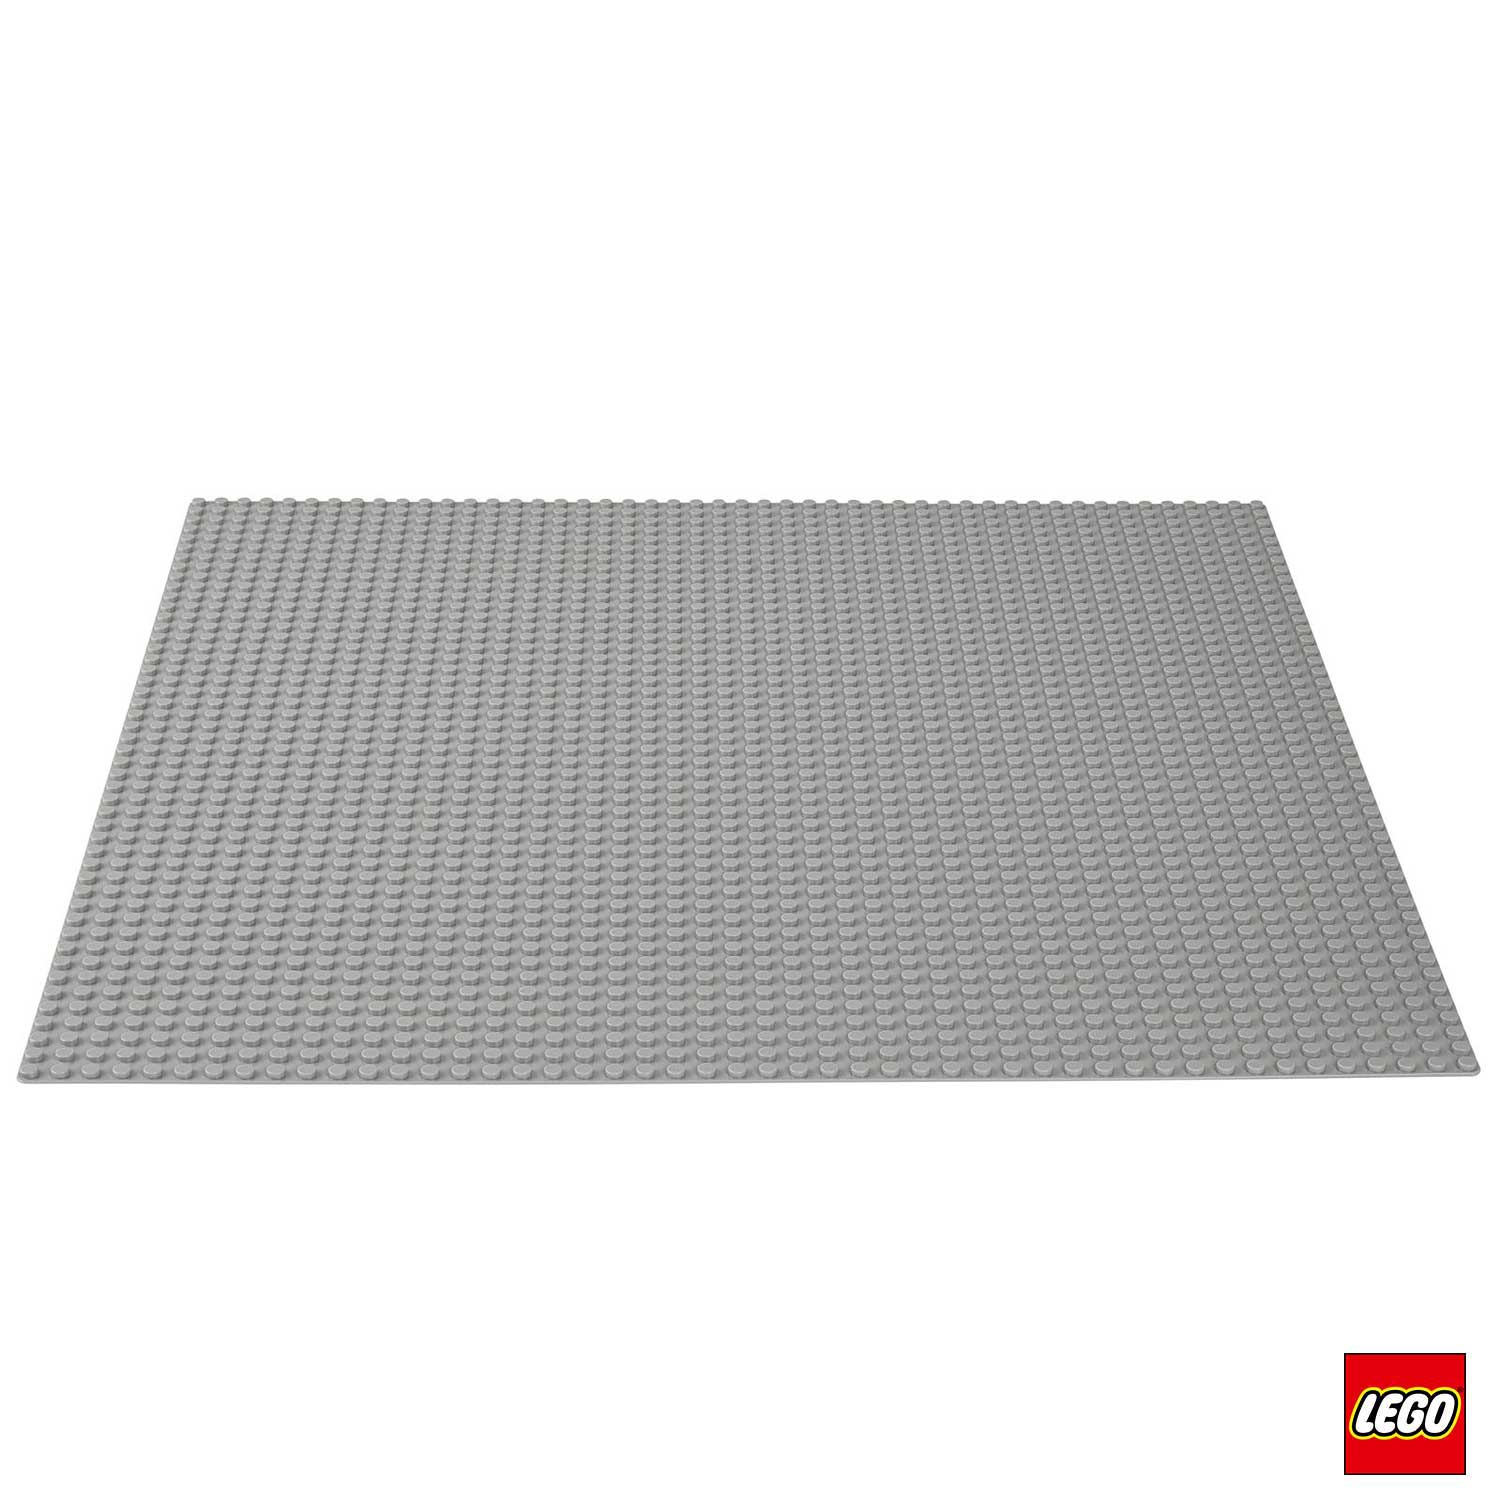 Lego – Classic® Gray Base 10701 – Iperbimbo